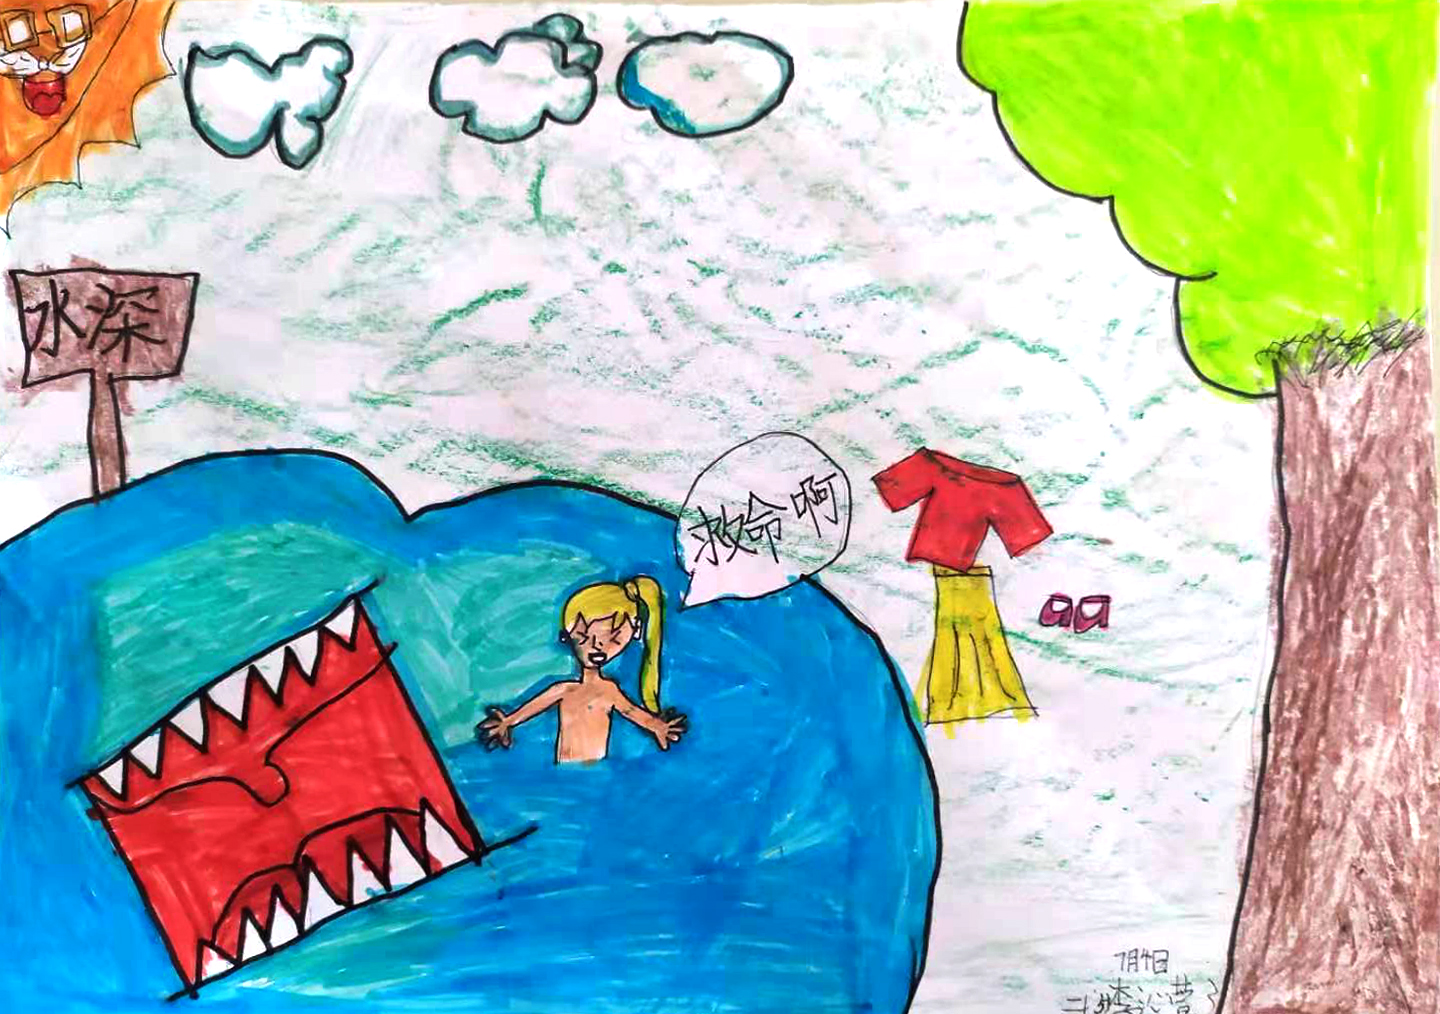 安全第一生命至上英华暑期安全主题之防溺水优秀绘画作品展播